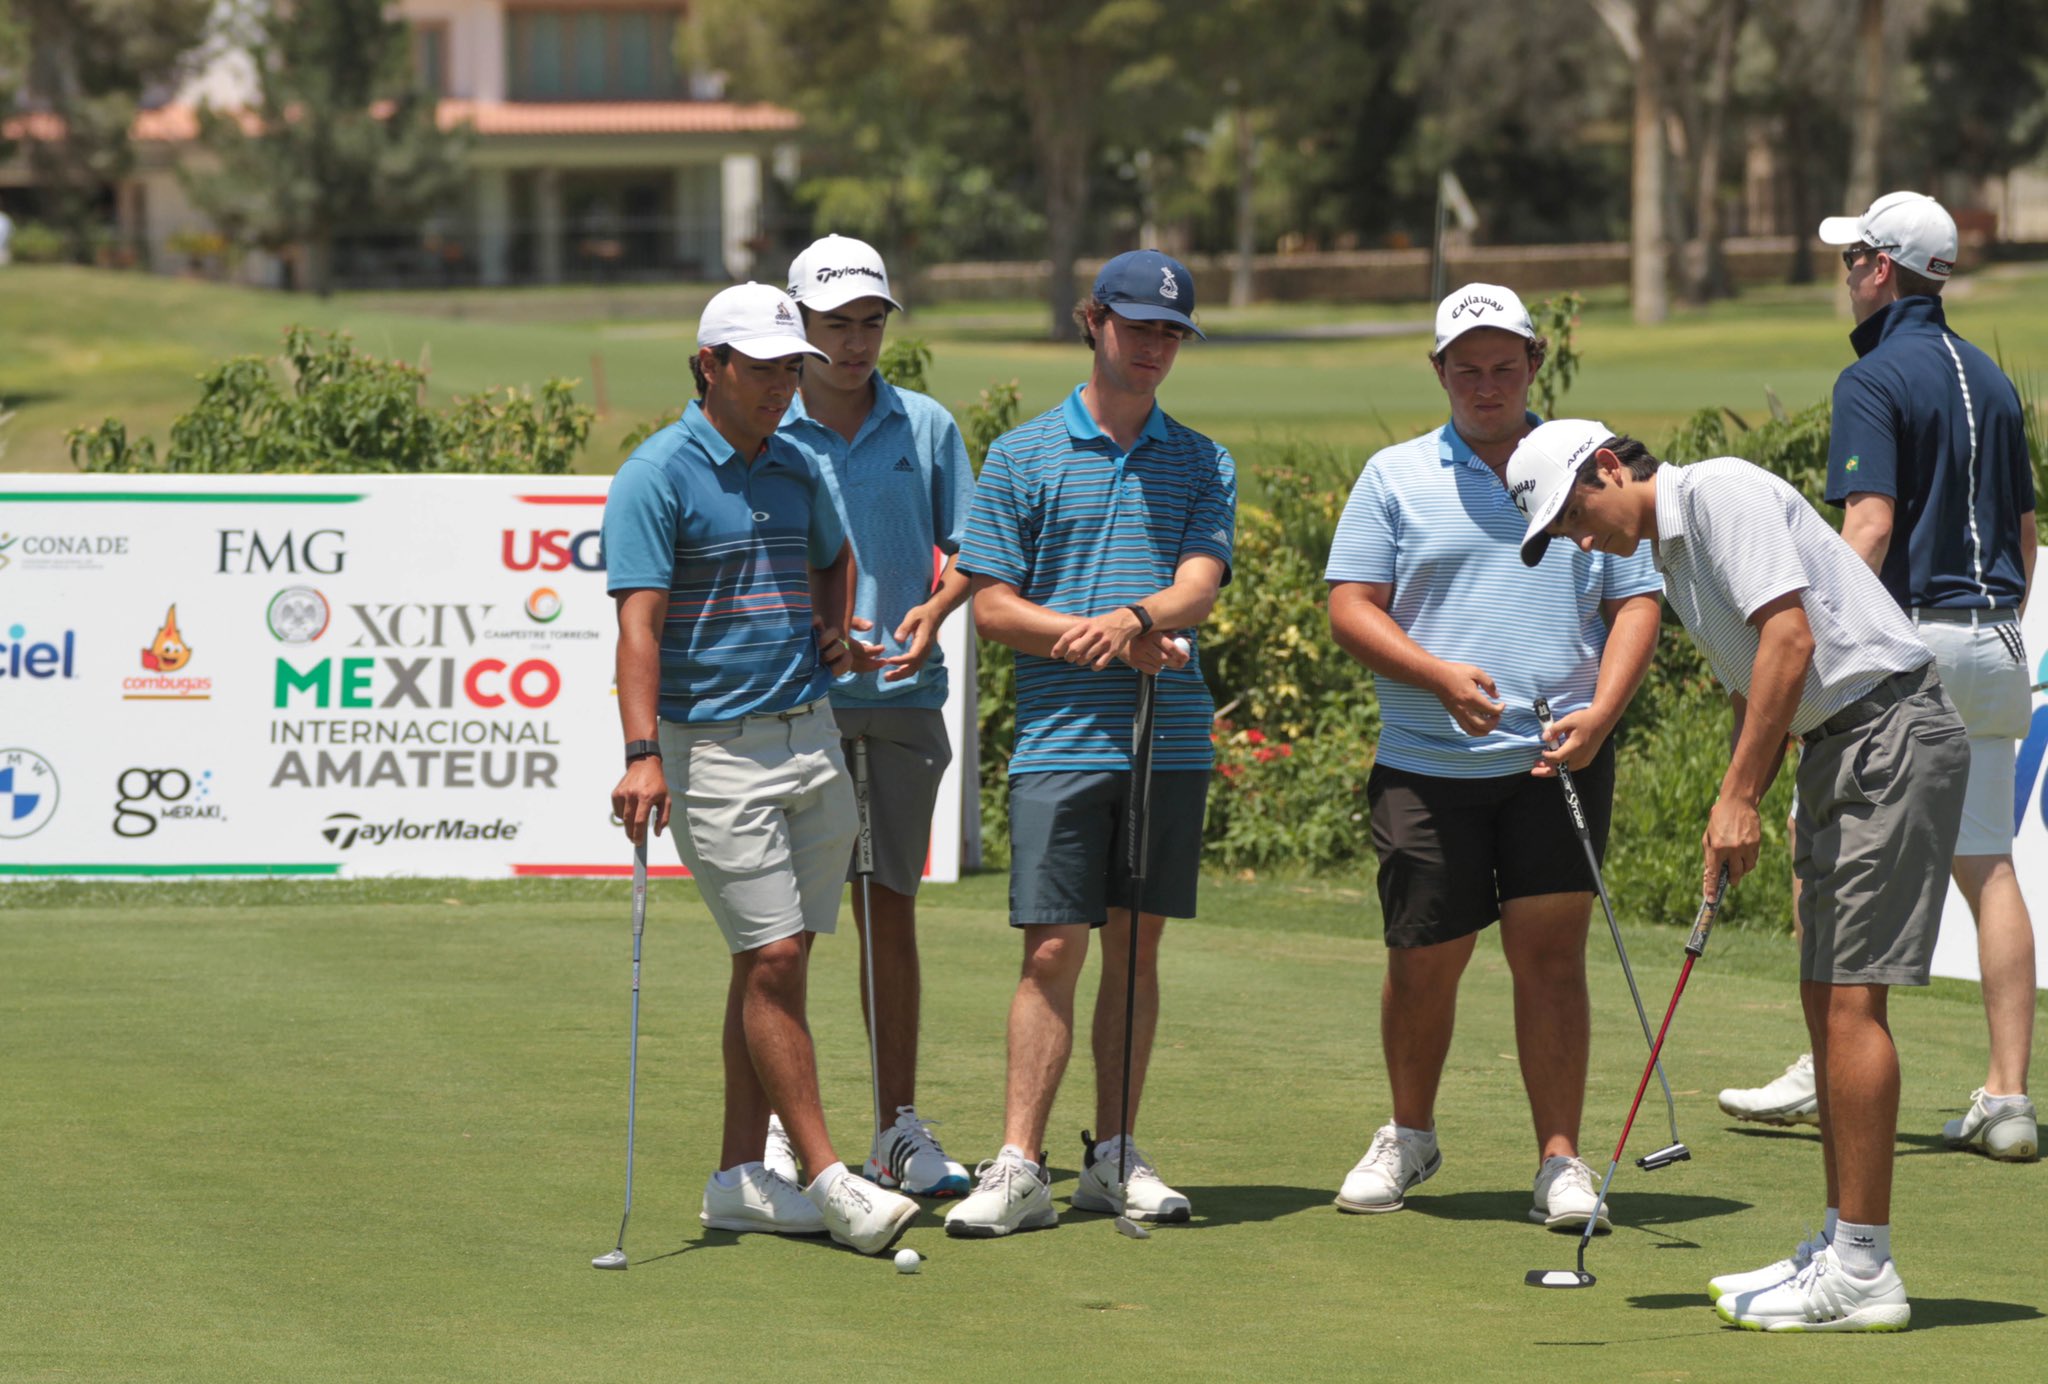 Federación Mexicana de Golf (@fedmexgolf) • Instagram photos and videos